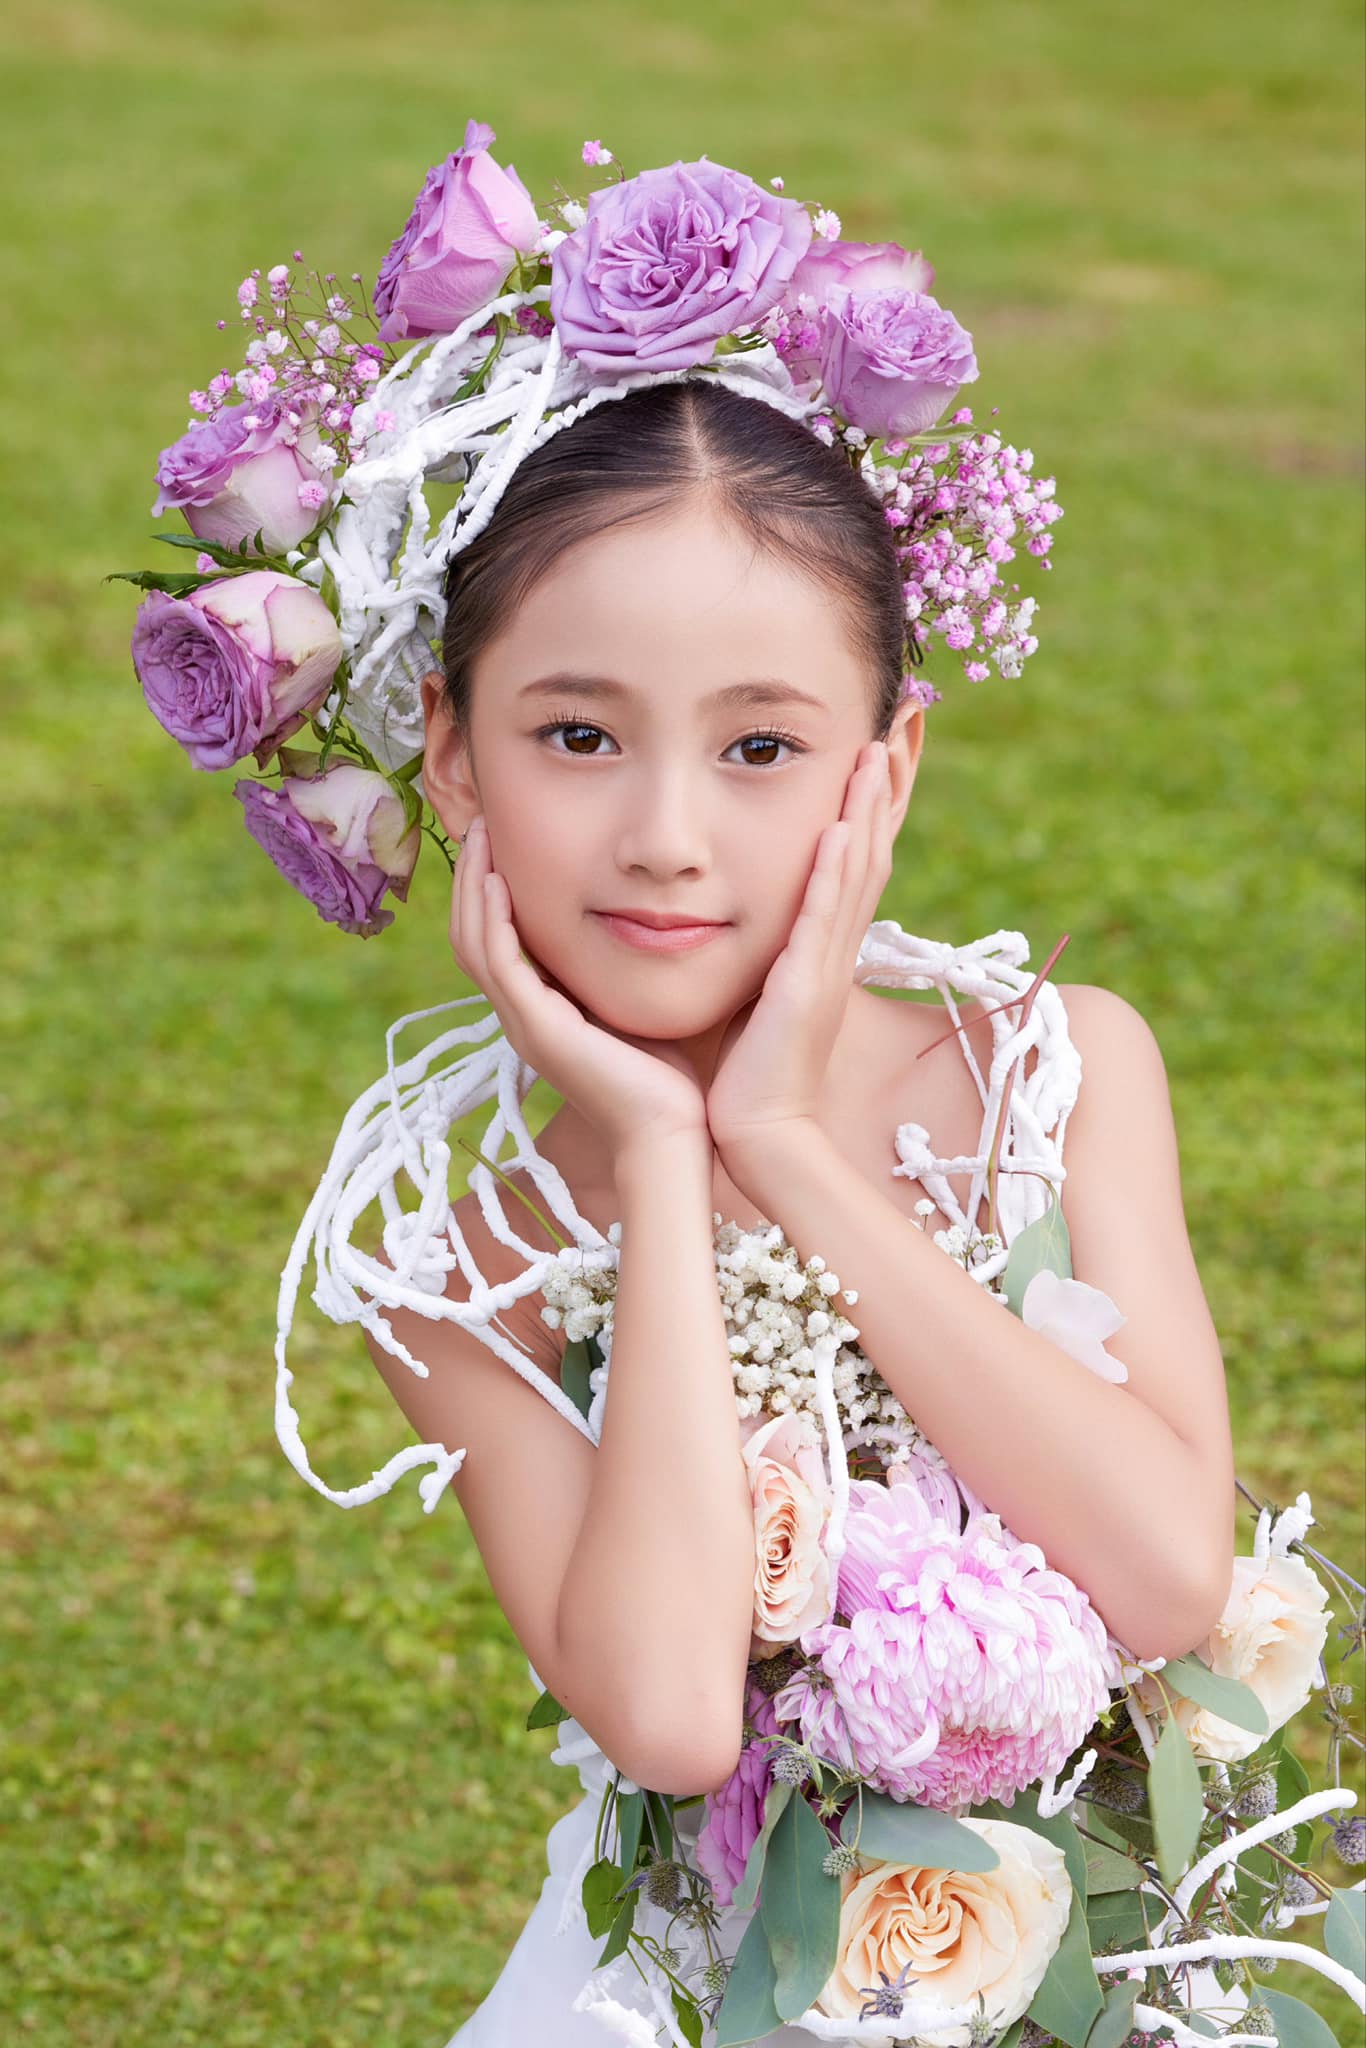 Nhan sắc ái nữ 8 tuổi của Hà Kiều Anh được dự đoán thành Hoa hậu tương lai - Ảnh 3.